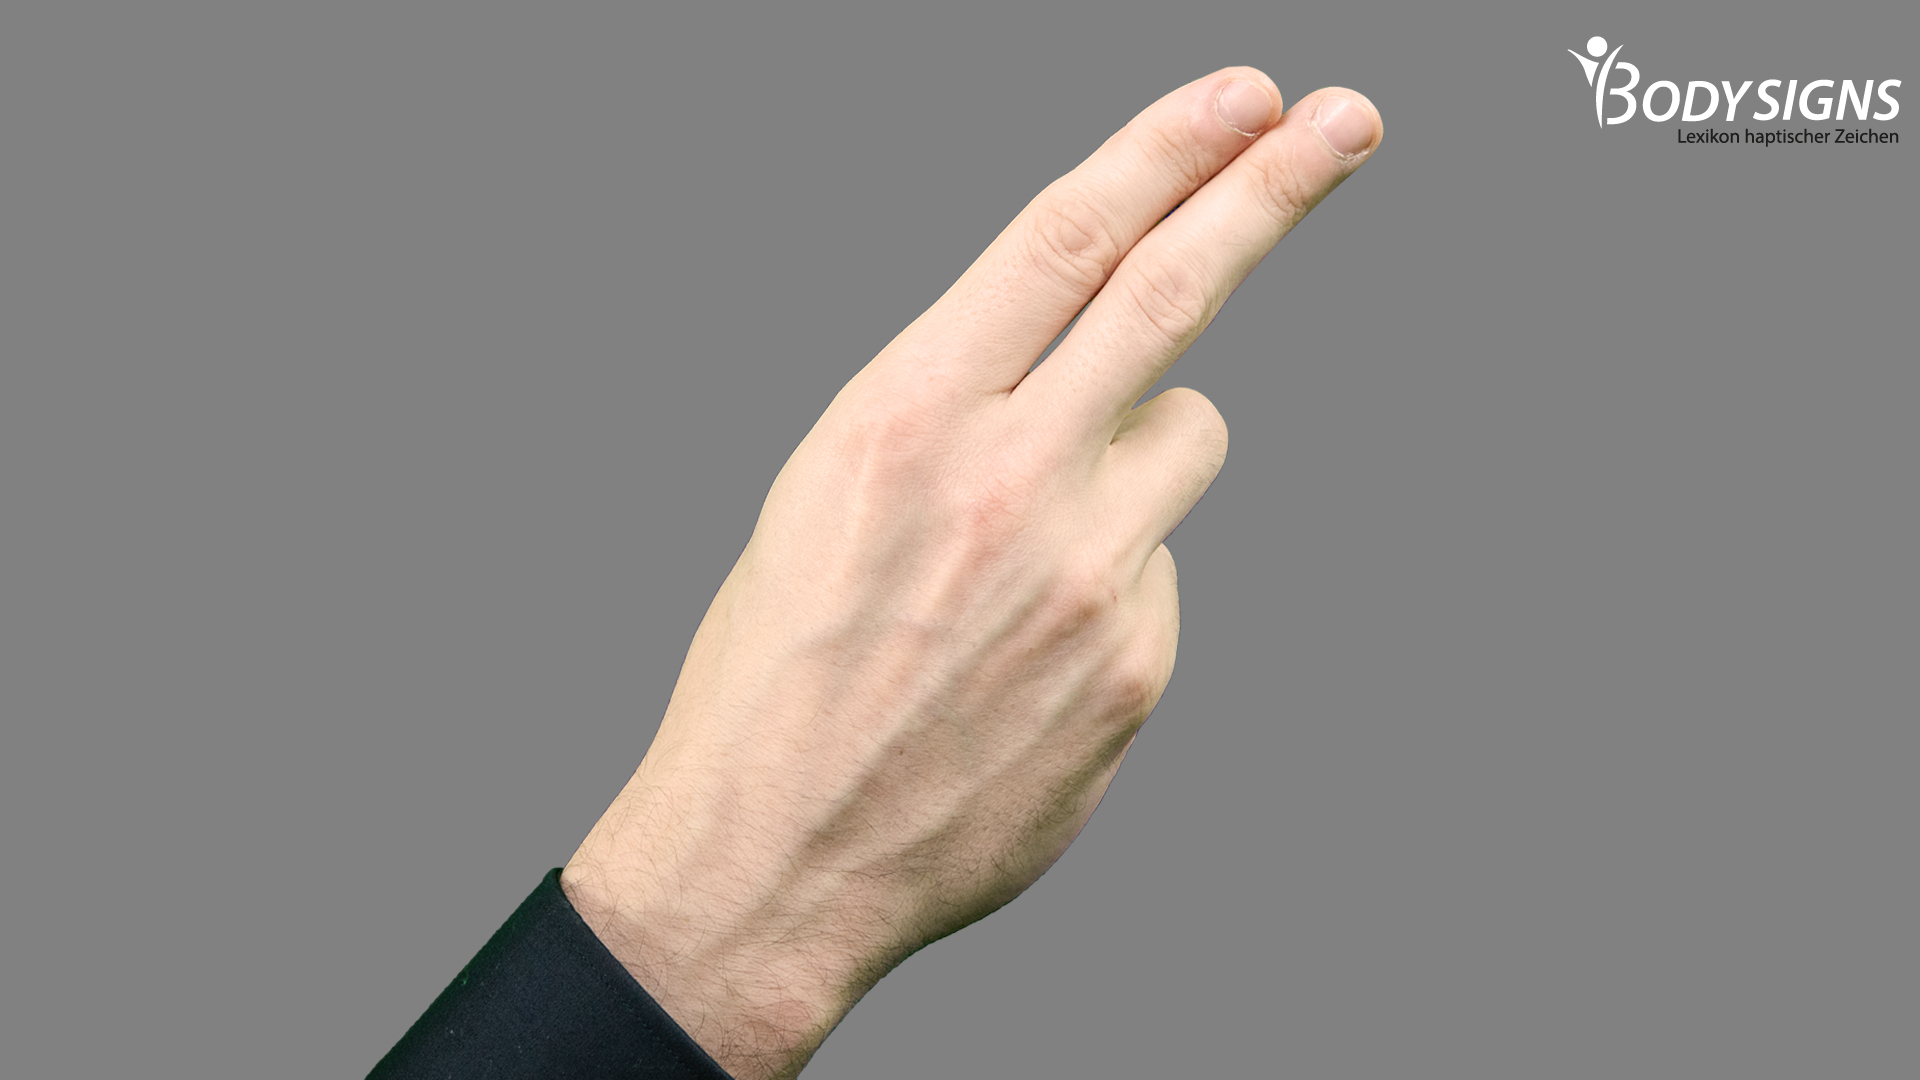 Zeigefinger und Mittelfinger ausgestreckt und eng beieinander.